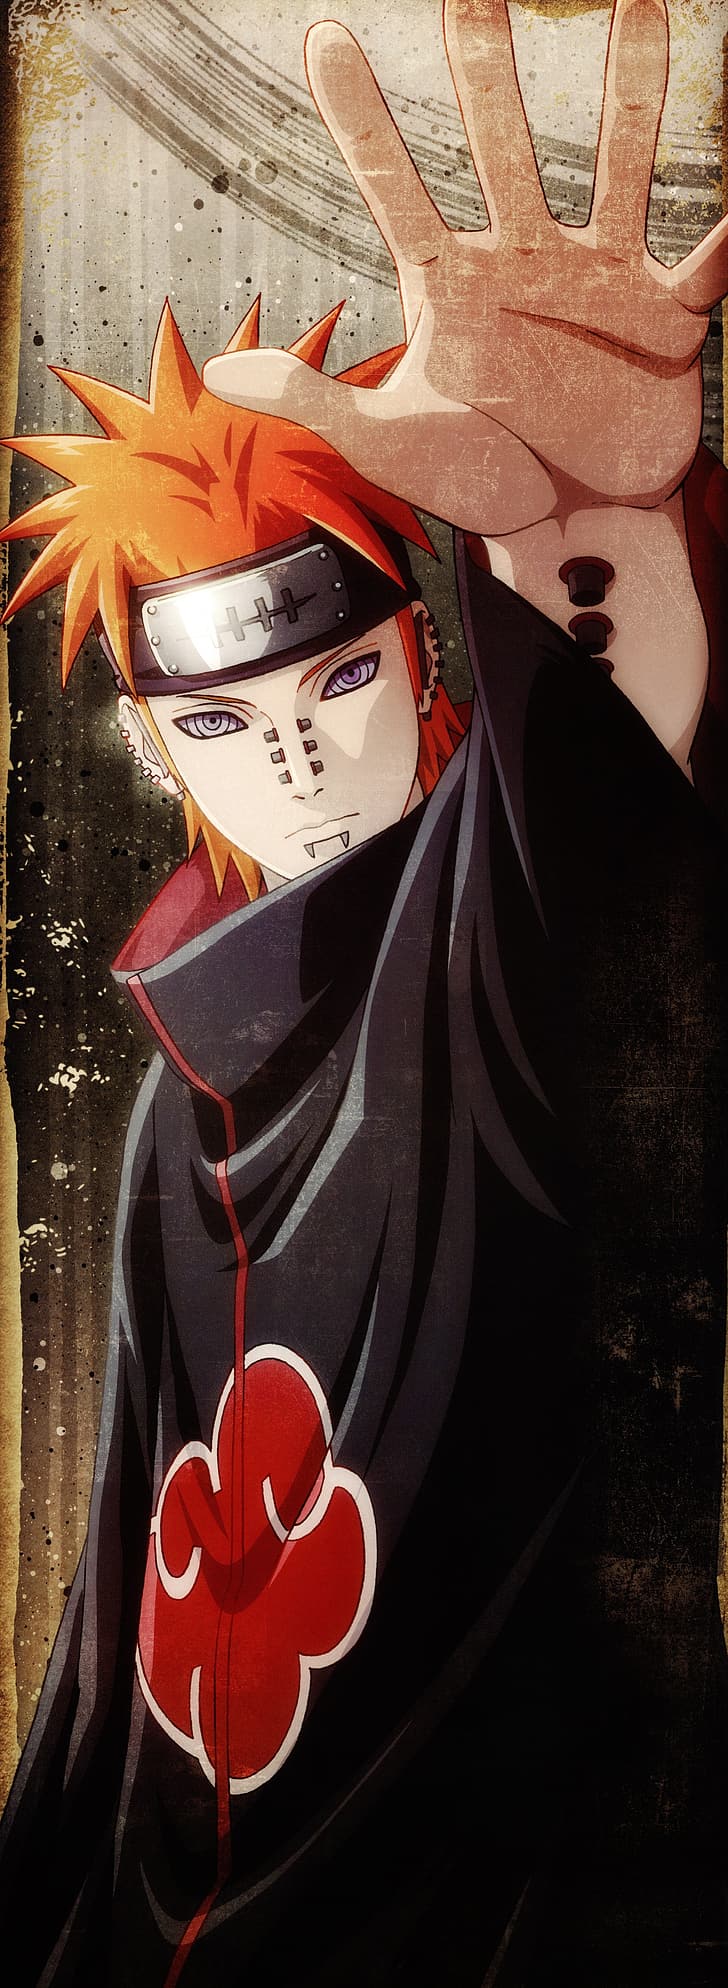 Naruto Shippuuden Anime Uchiha Sasuke Uzumaki Naruto 1080p 2k 4k 5k Hd Wallpapers Free Download Wallpaper Flare